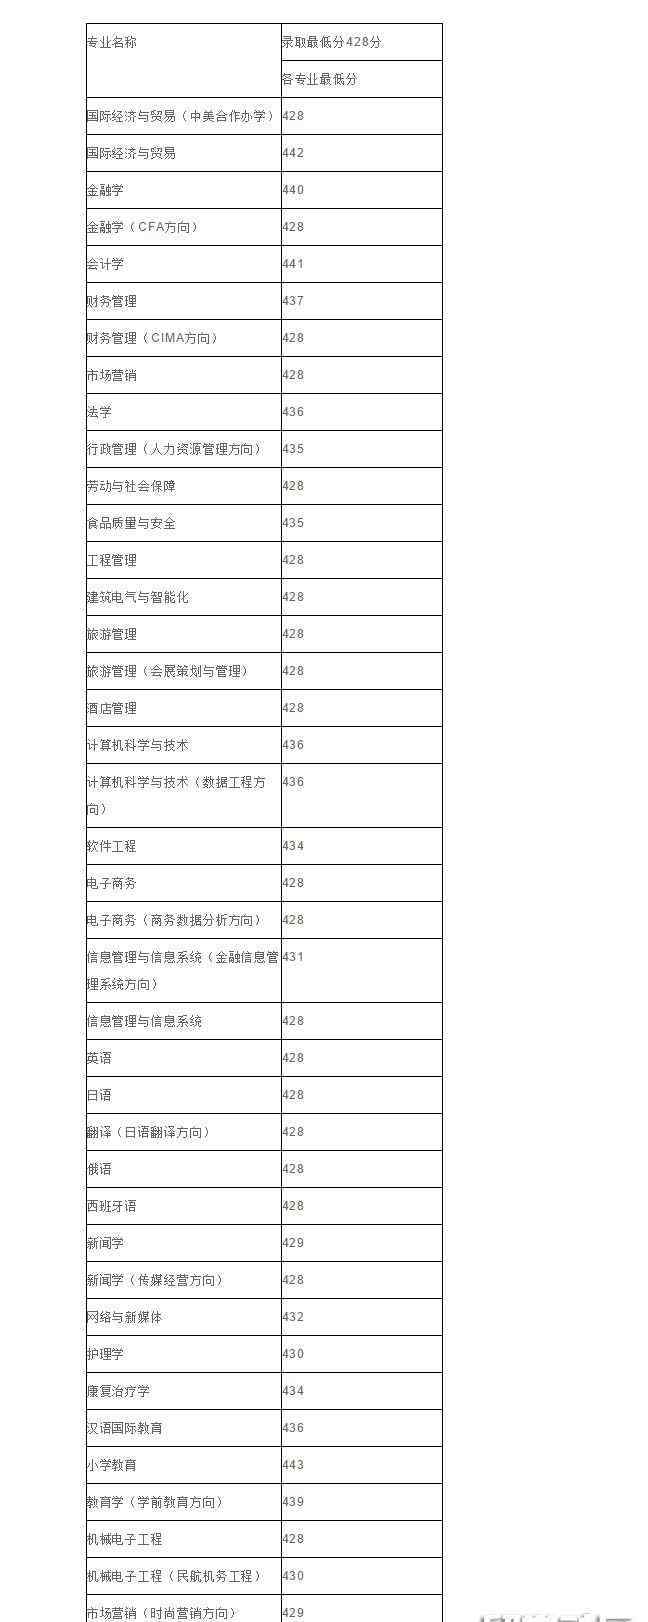 上海杉达学院是几本 上海杉达学院2018上海本科分数线